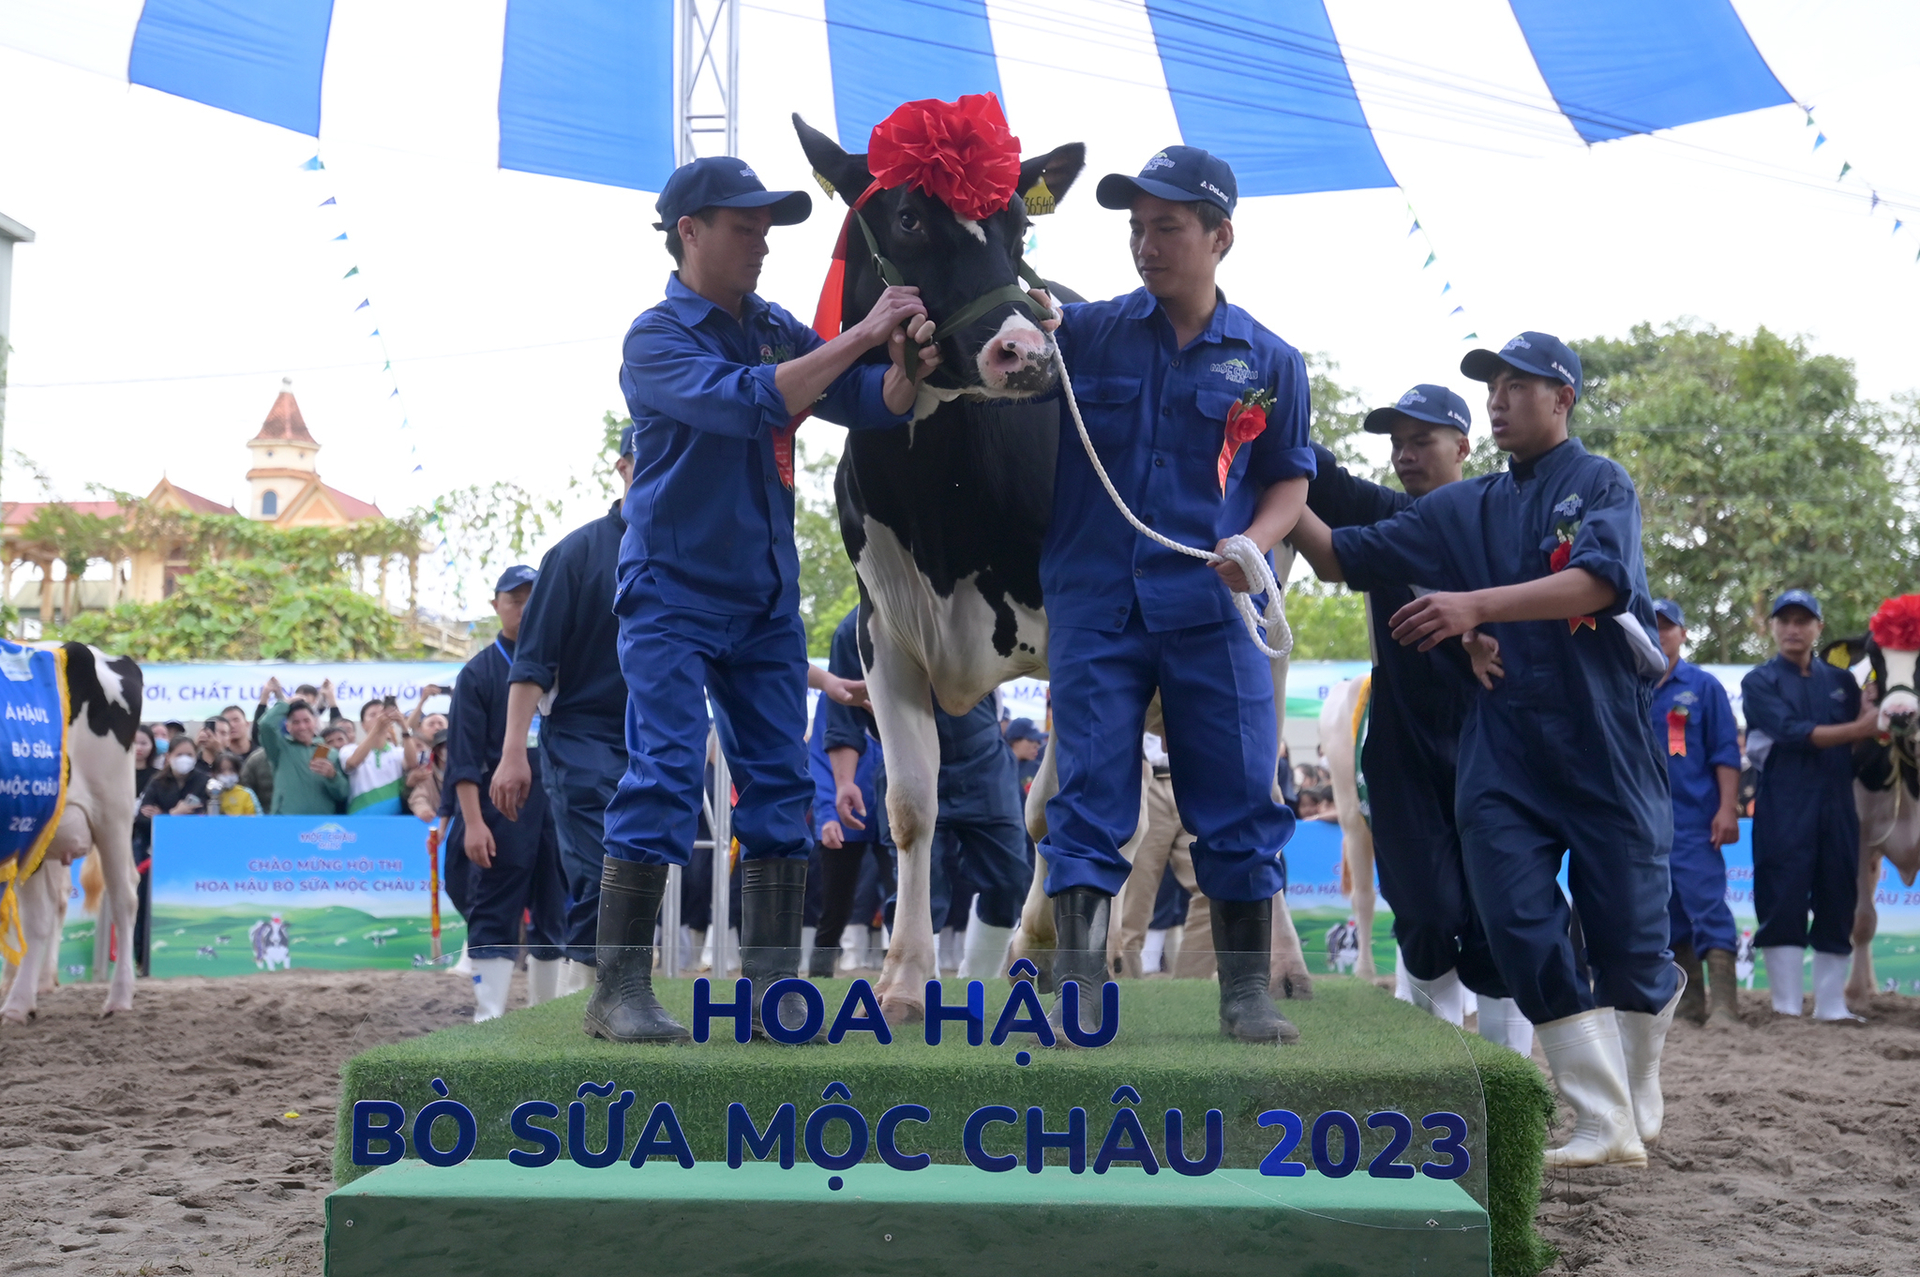 Hoa hậu bò sữa Mộc Châu 2023 thuộc về 'cô' bò có số hiệu HF36548. Ảnh: Tùng Đinh.